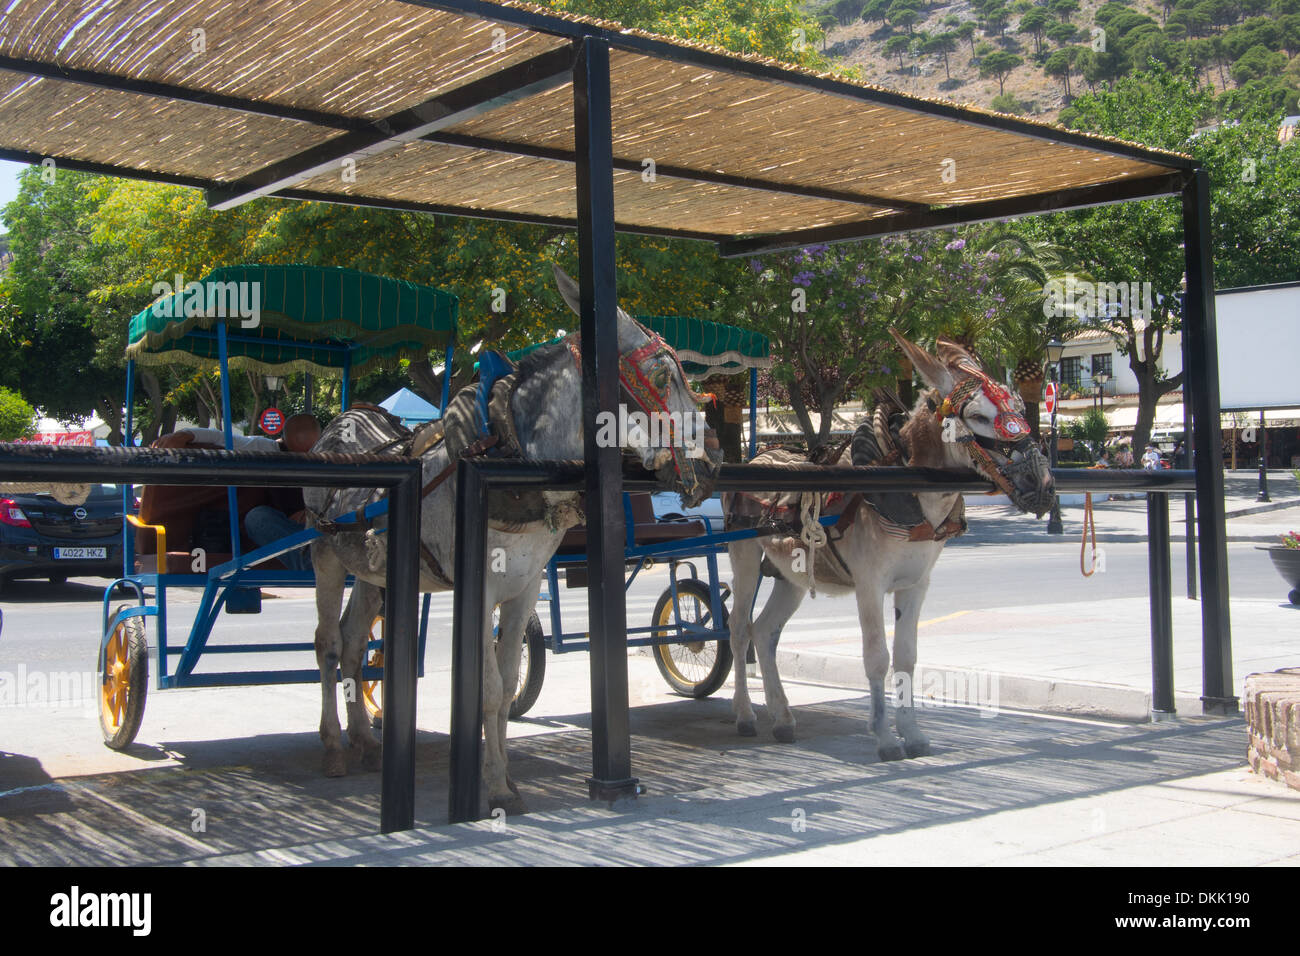 Mijas, mountain resort, célèbre pour ses ânes, Andalousie, Espagne Banque D'Images